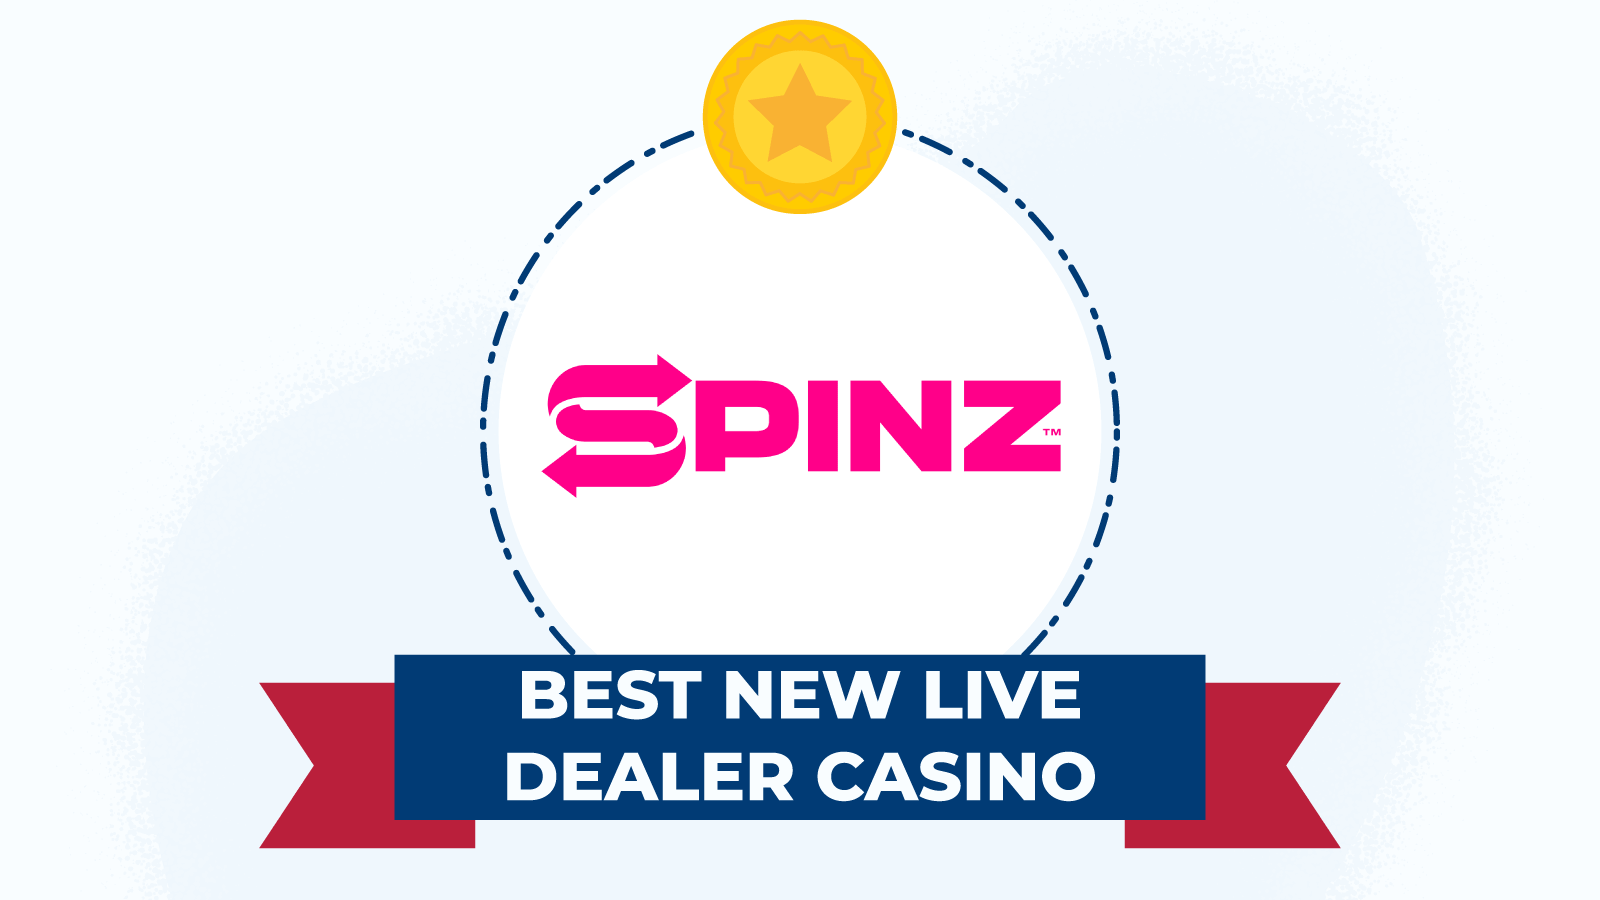 Spinz Casino – Best new live dealer casino